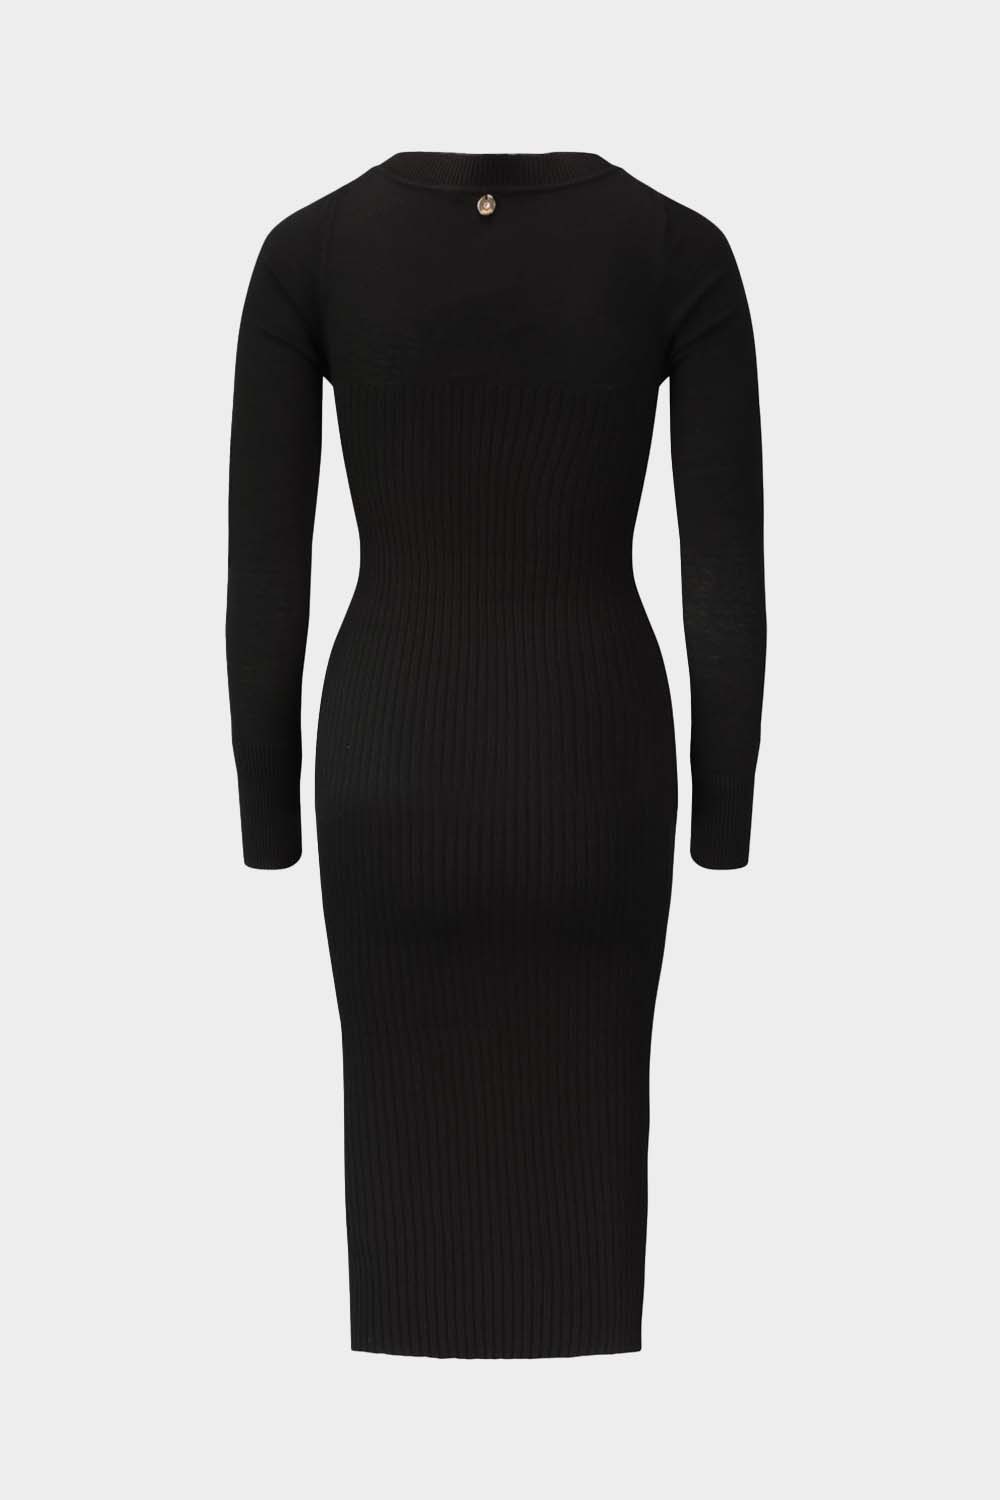 שמלת סריג ריבס לנשים אחרי הברך LIU JO Vendome online | ונדום .